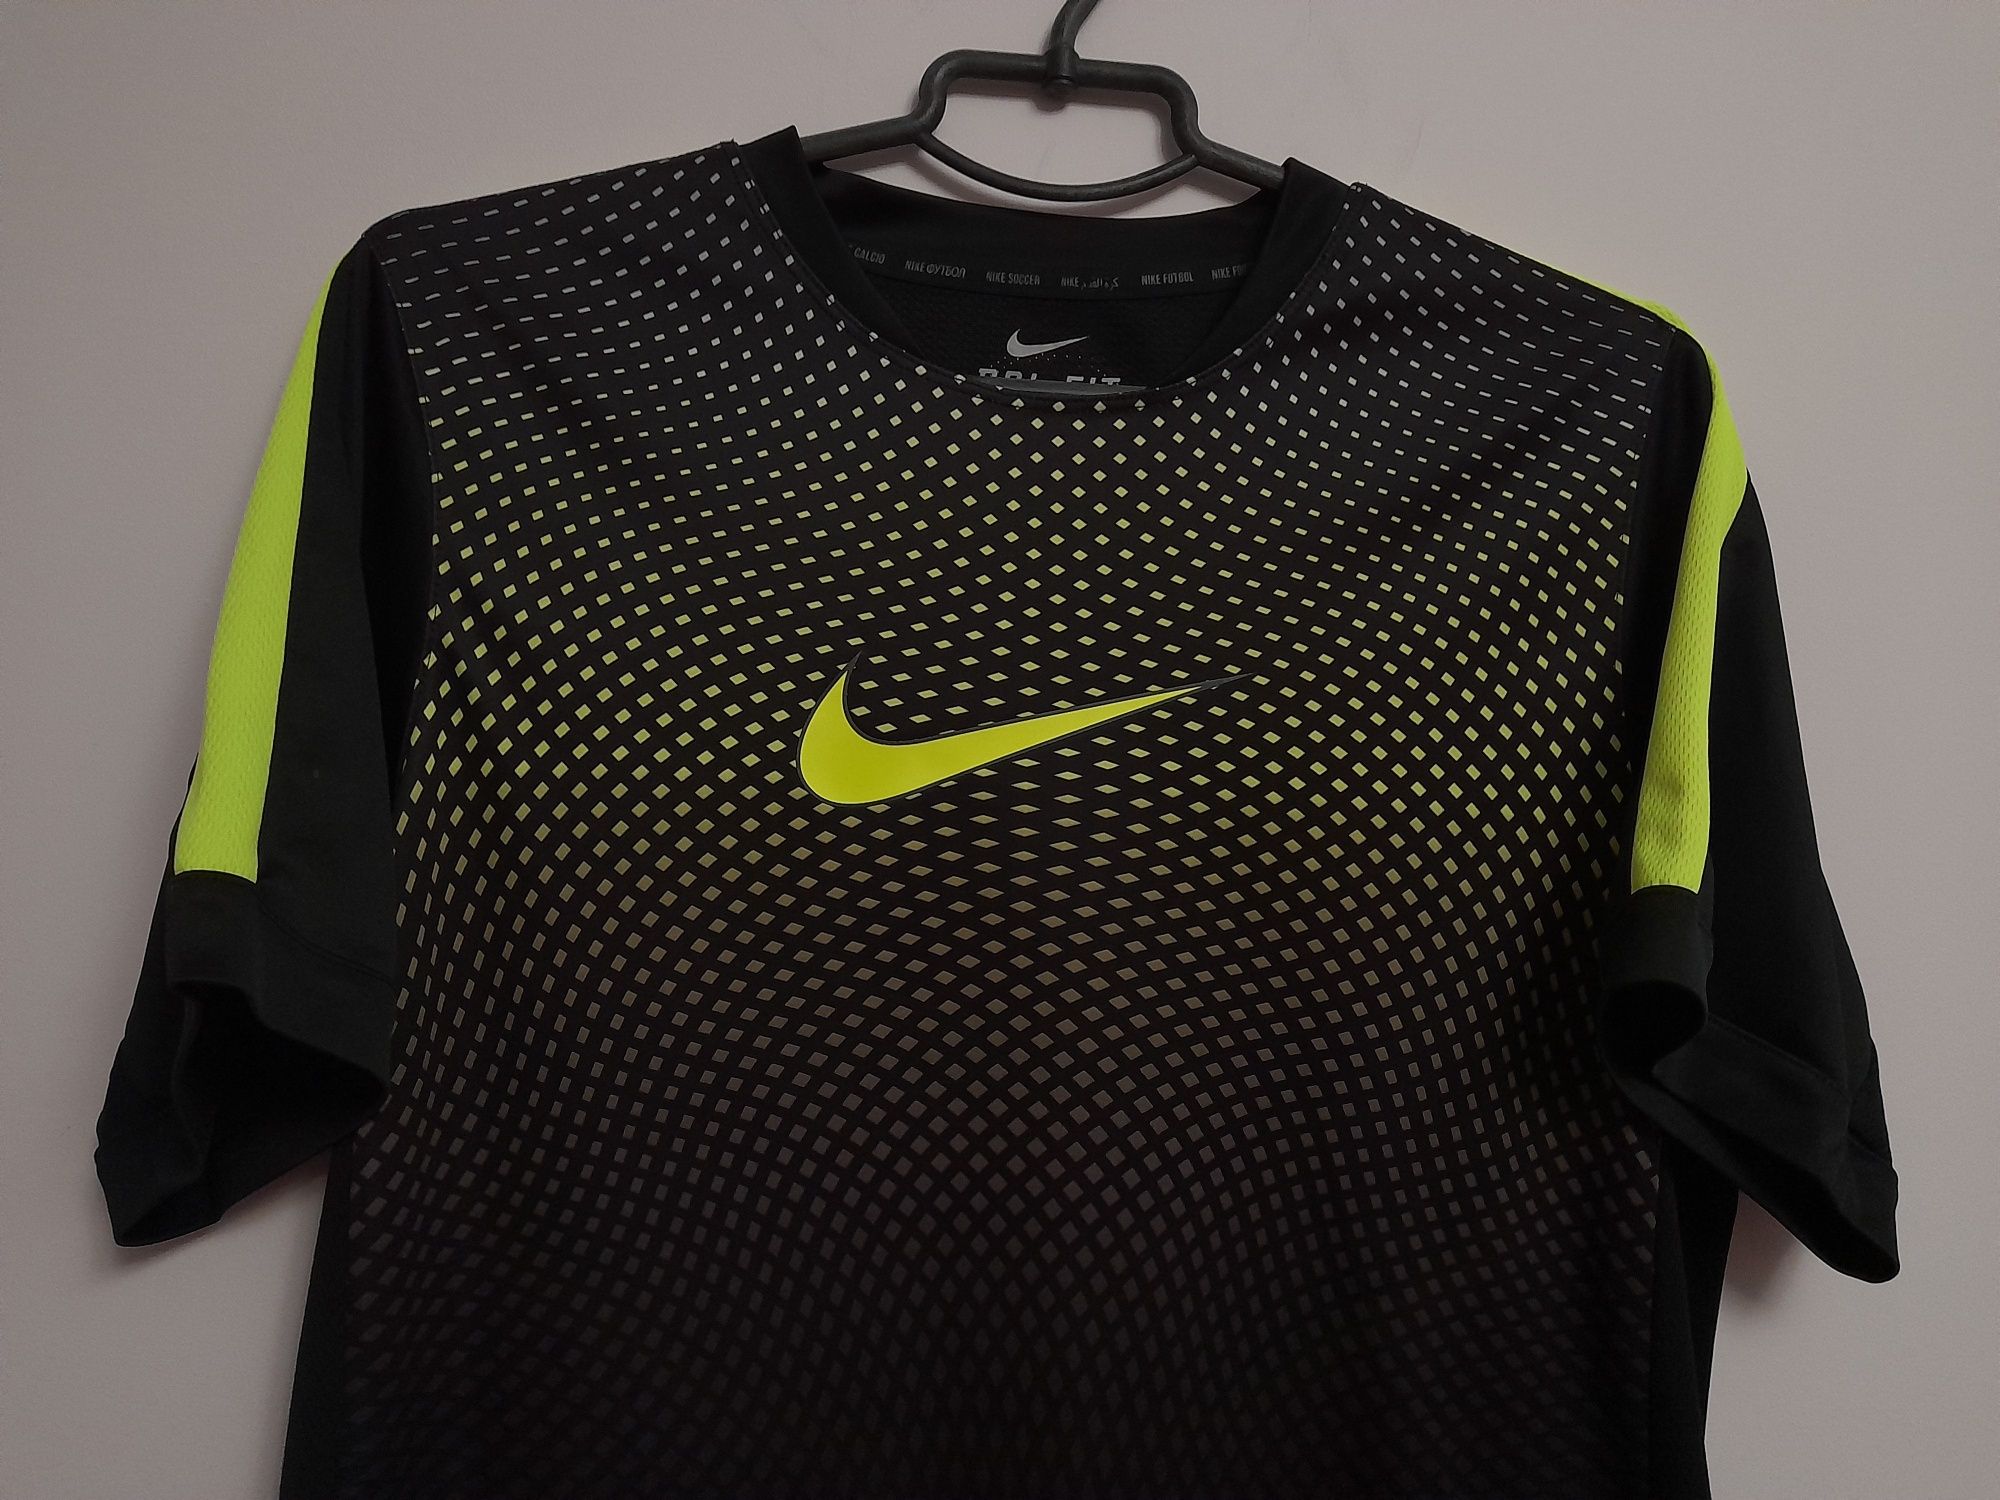 Оригинал Nike dri-fit спортивная футболка, М